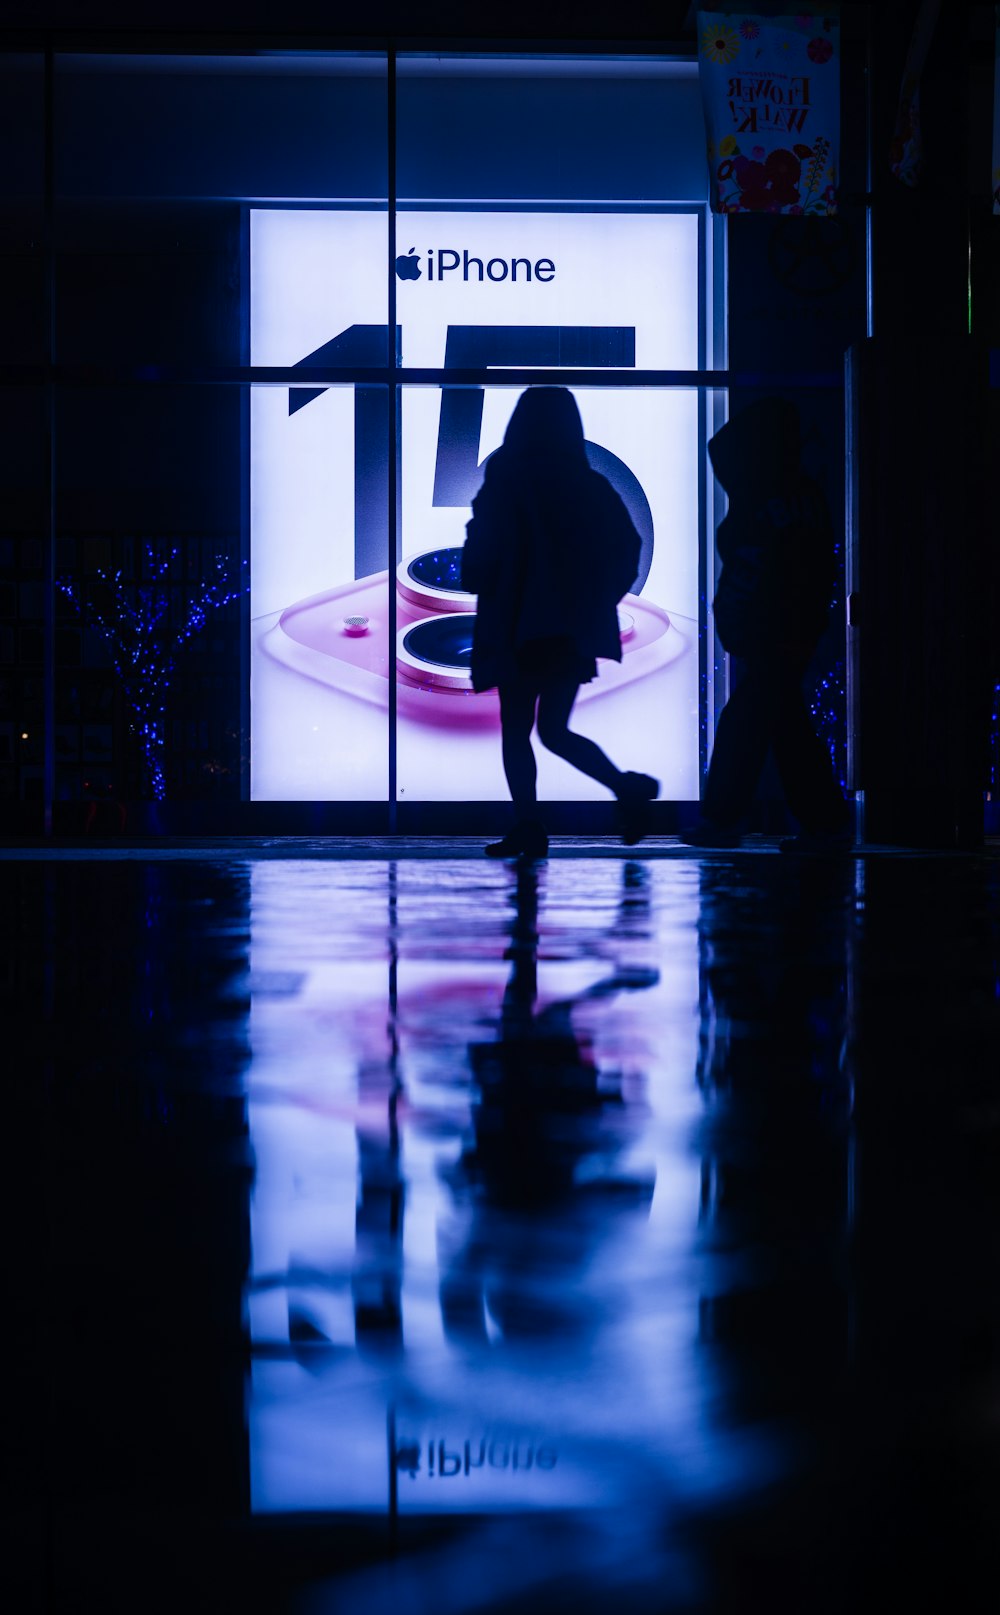 a woman is walking past a store window